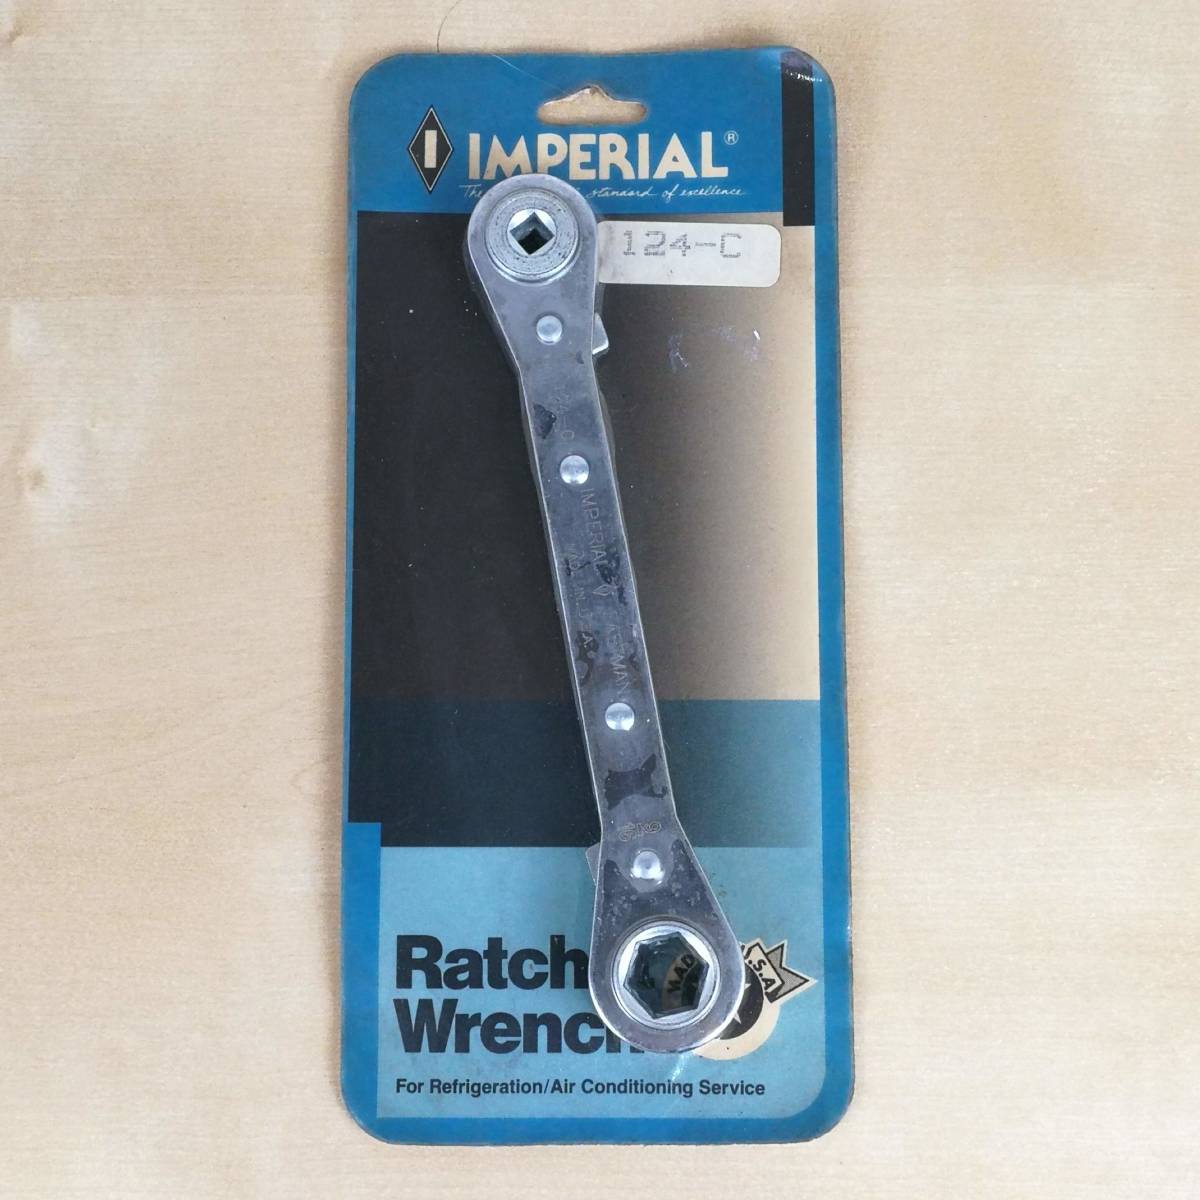 新品未開封 インペリアル ラチェットレンチ Imperial Ratchet Wrenches 124-C ①_画像1